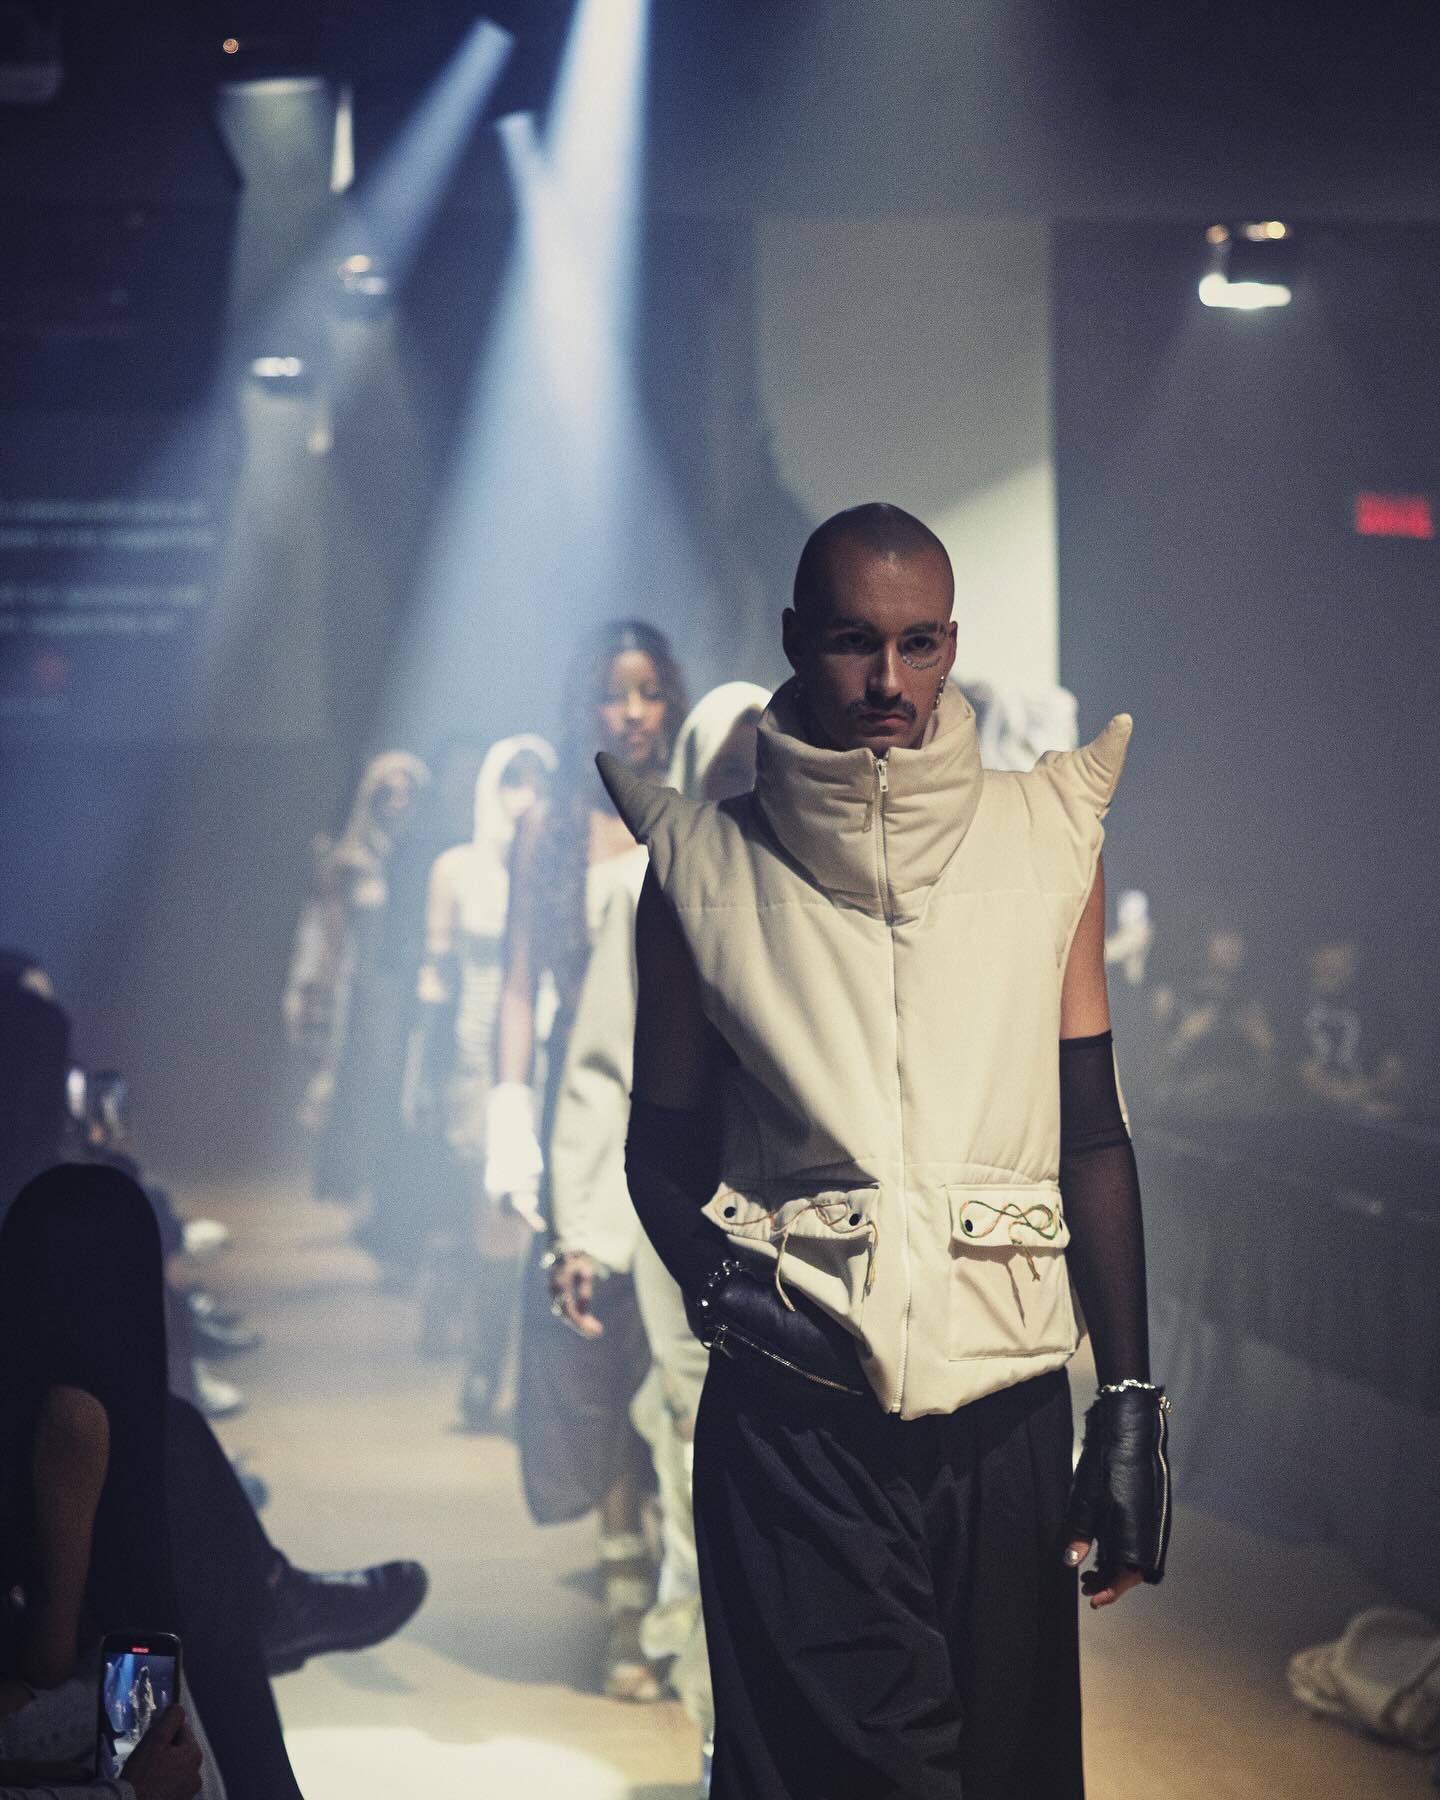 Un mannequin défile dans une tenue sculpturale innovante lors d'un défilé de mode, mettant en lumière un design futuriste sous un éclairage dramatique.